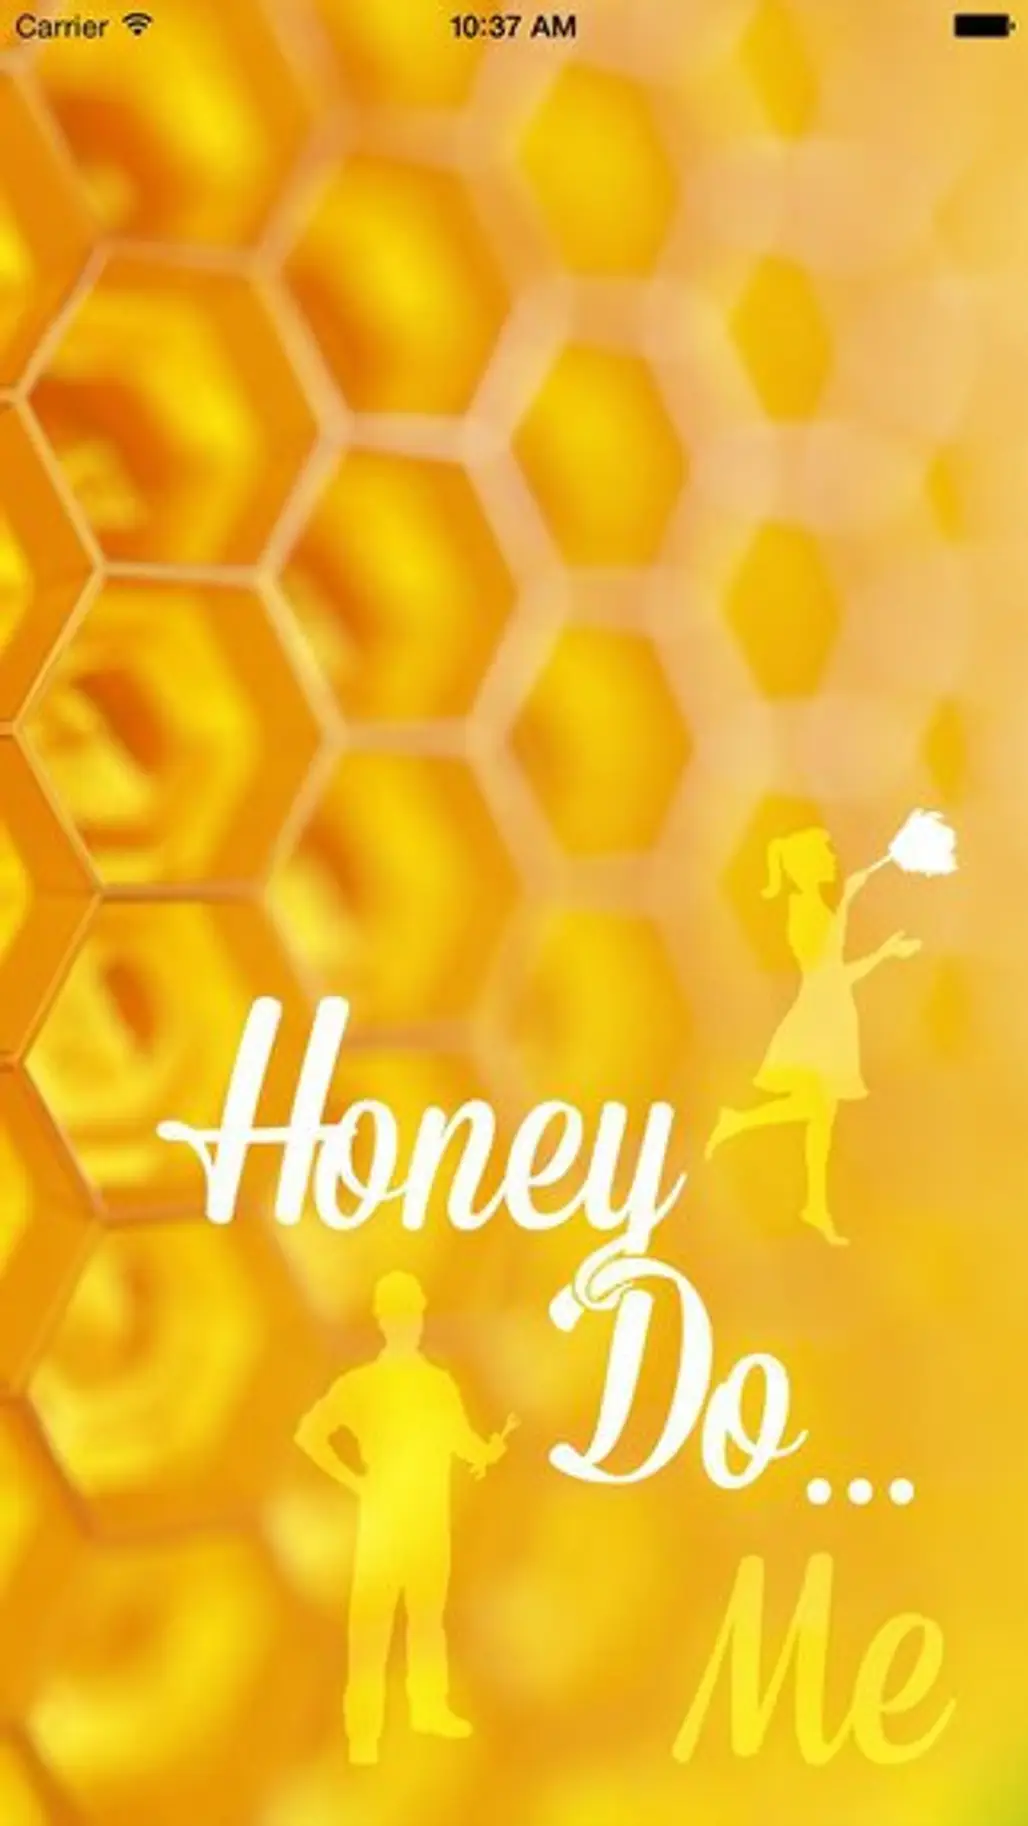 Honey do … Me!